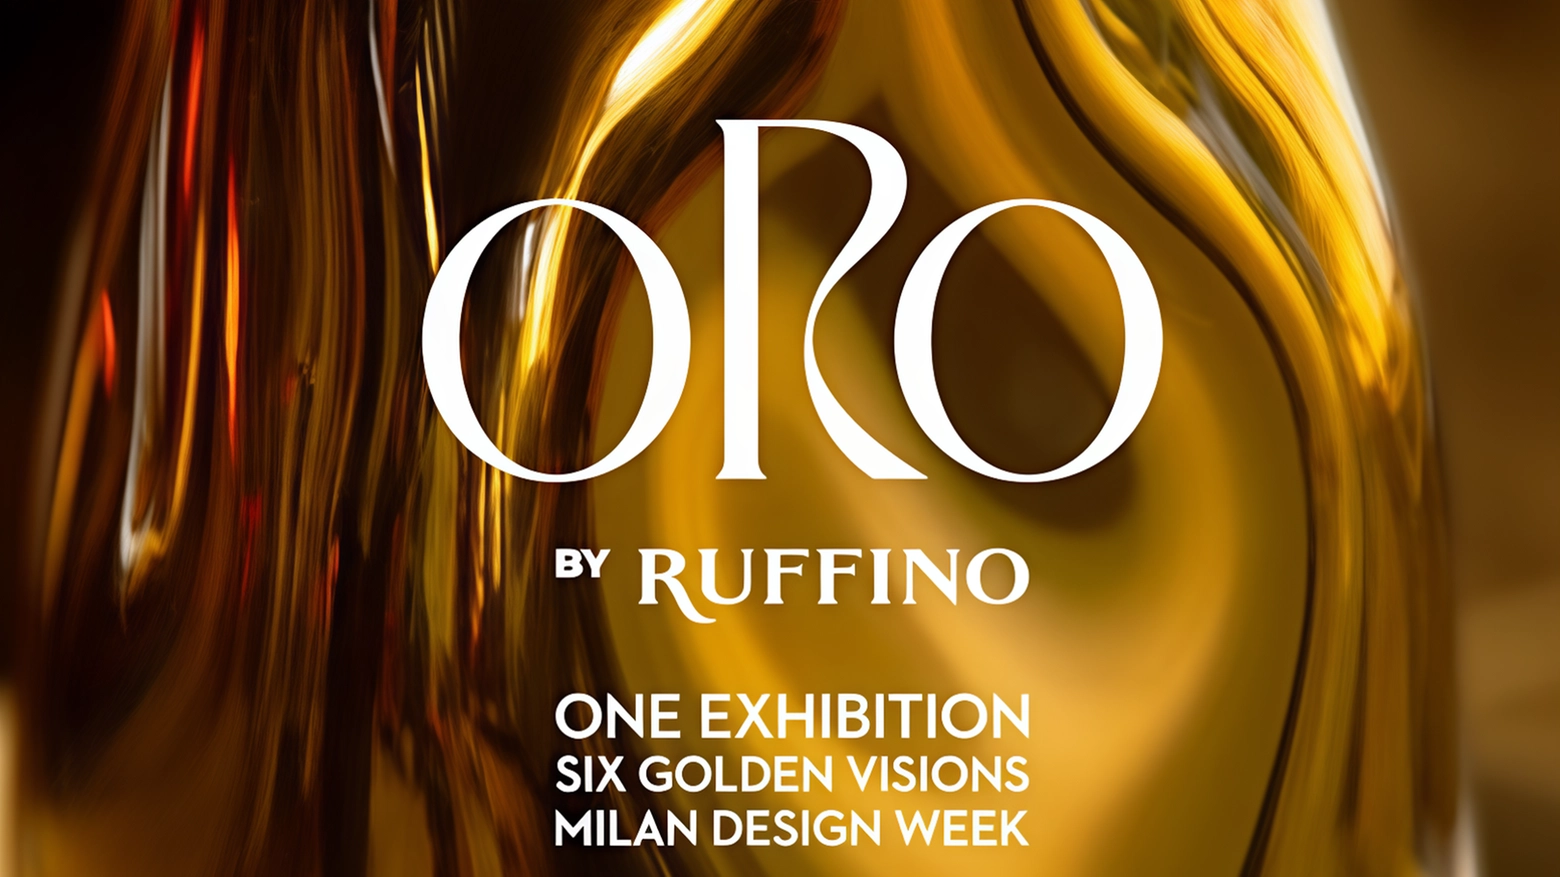 Ruffino, azienda vitivinicola toscana di Pontassieve, sarà protagonista alla Design Week con la mostra ORObyRUFFINO, un progetto unico, ispirato dal...